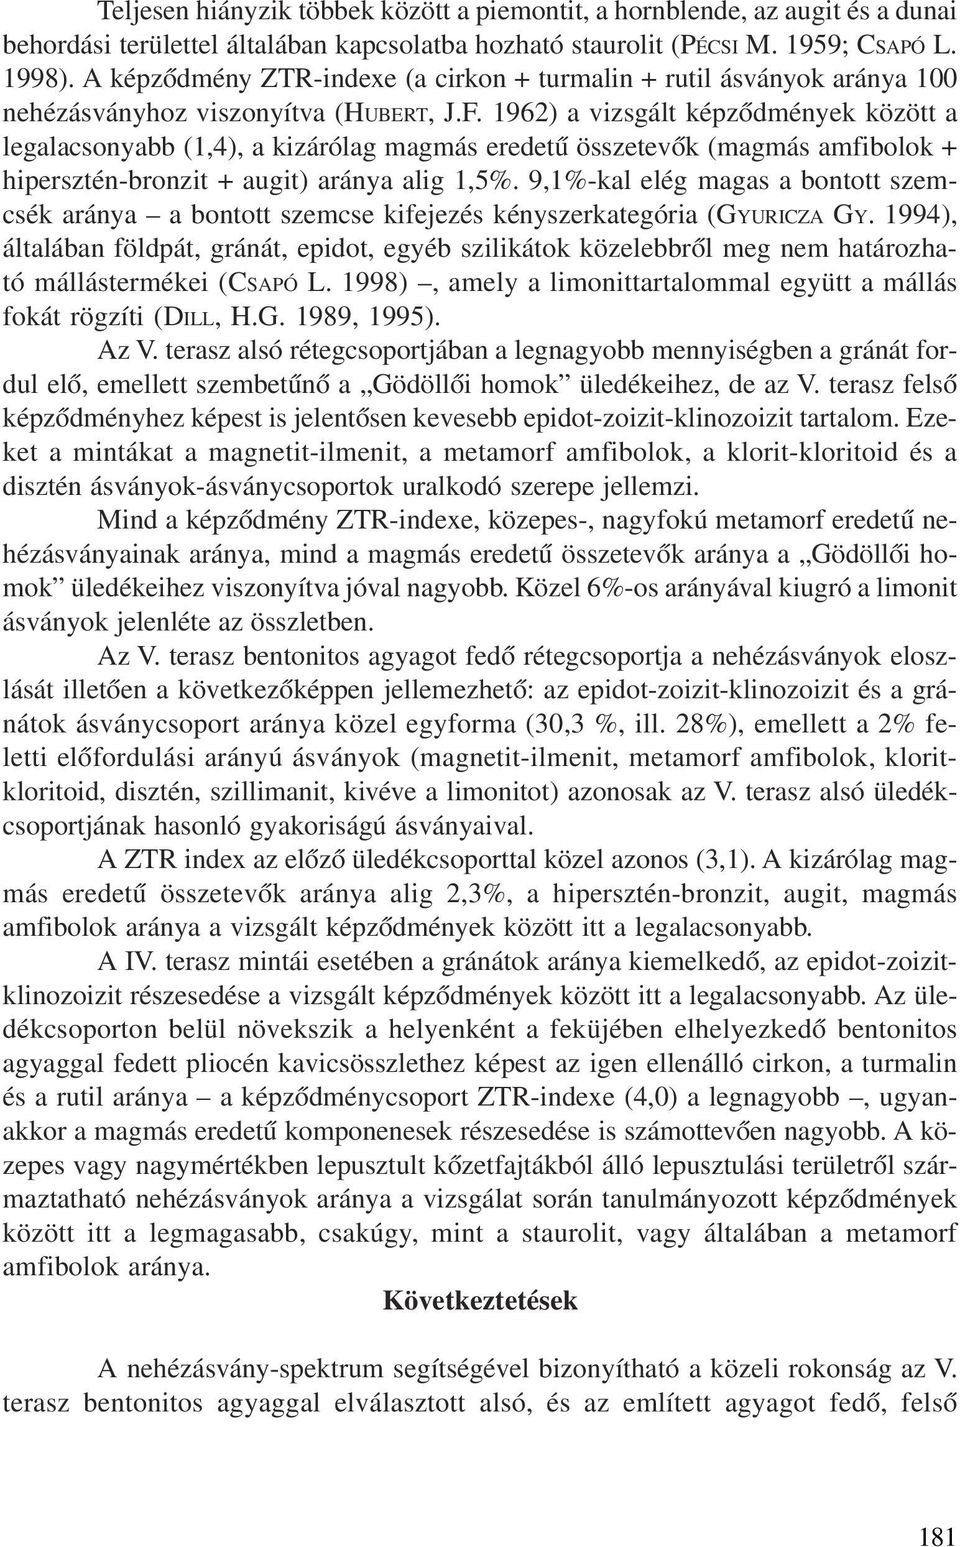 1962) a vizsgált képzõdmények között a legalacsonyabb (1,4), a kizárólag magmás eredetû összetevõk (magmás amfibolok + hipersztén-bronzit + augit) aránya alig 1,5%.